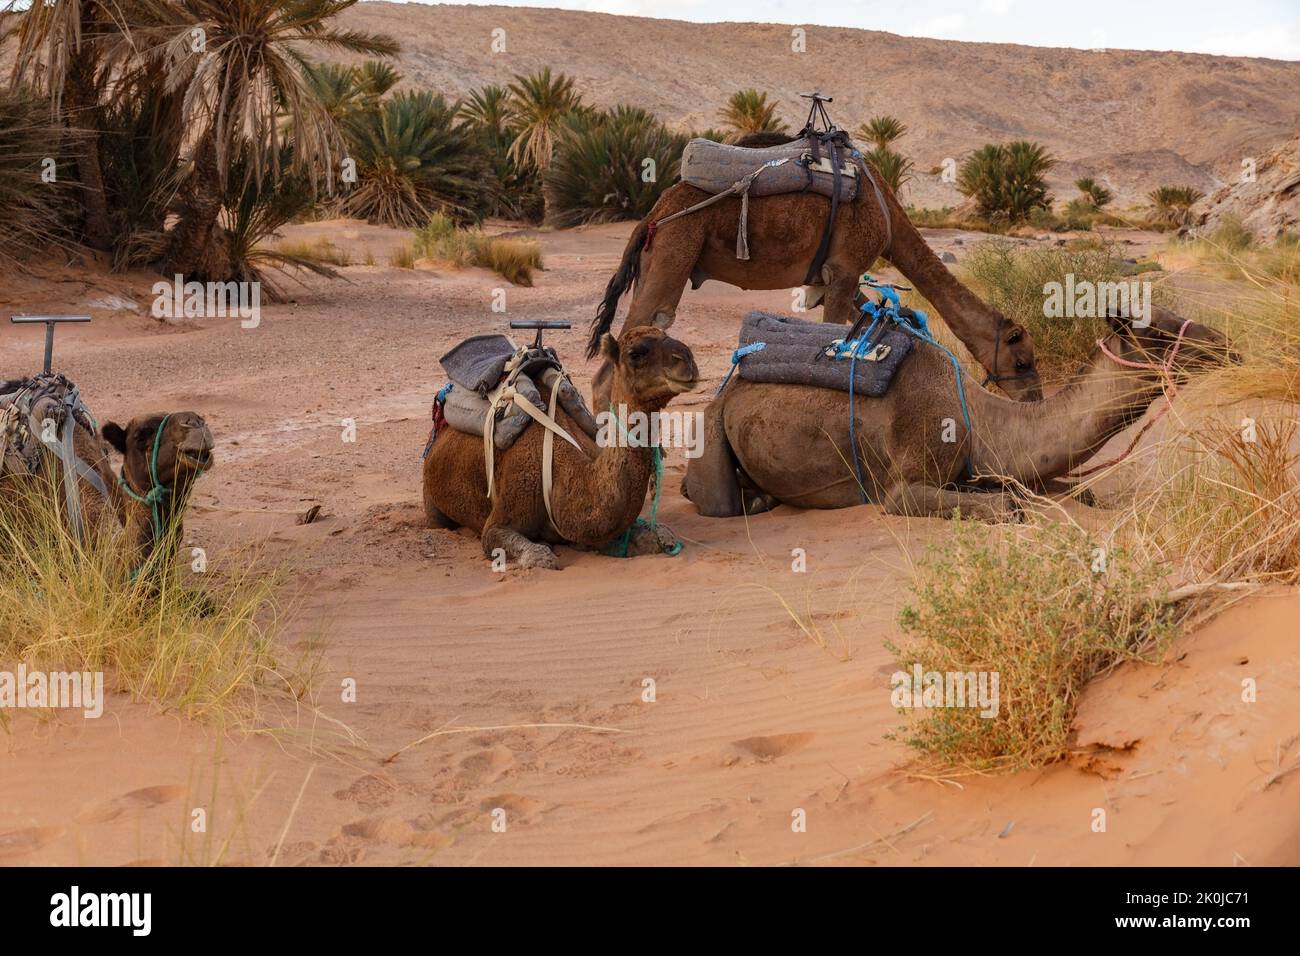 Chameaux reposant sur le sable dans le désert du Sahara. Maroc Banque D'Images